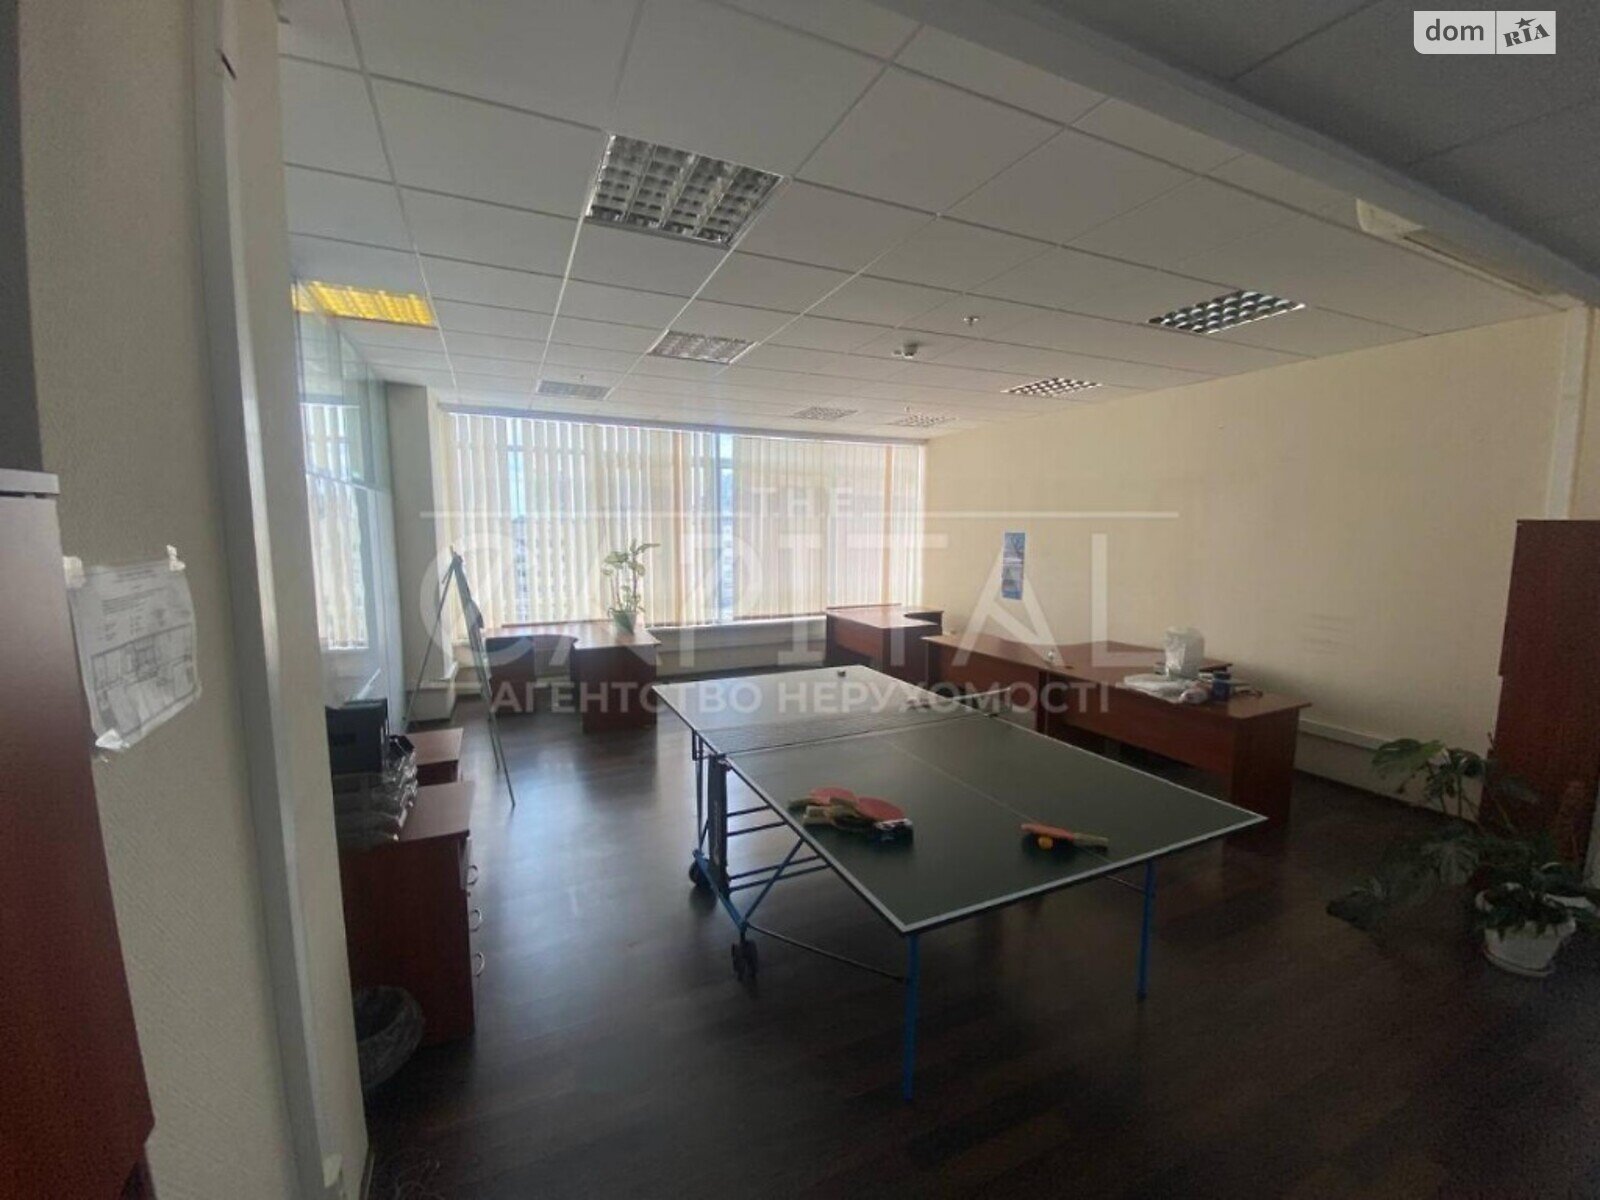 Аренда офисного помещения в Киеве, Баггоутовская 23, помещений - 6, этаж - 8 фото 1